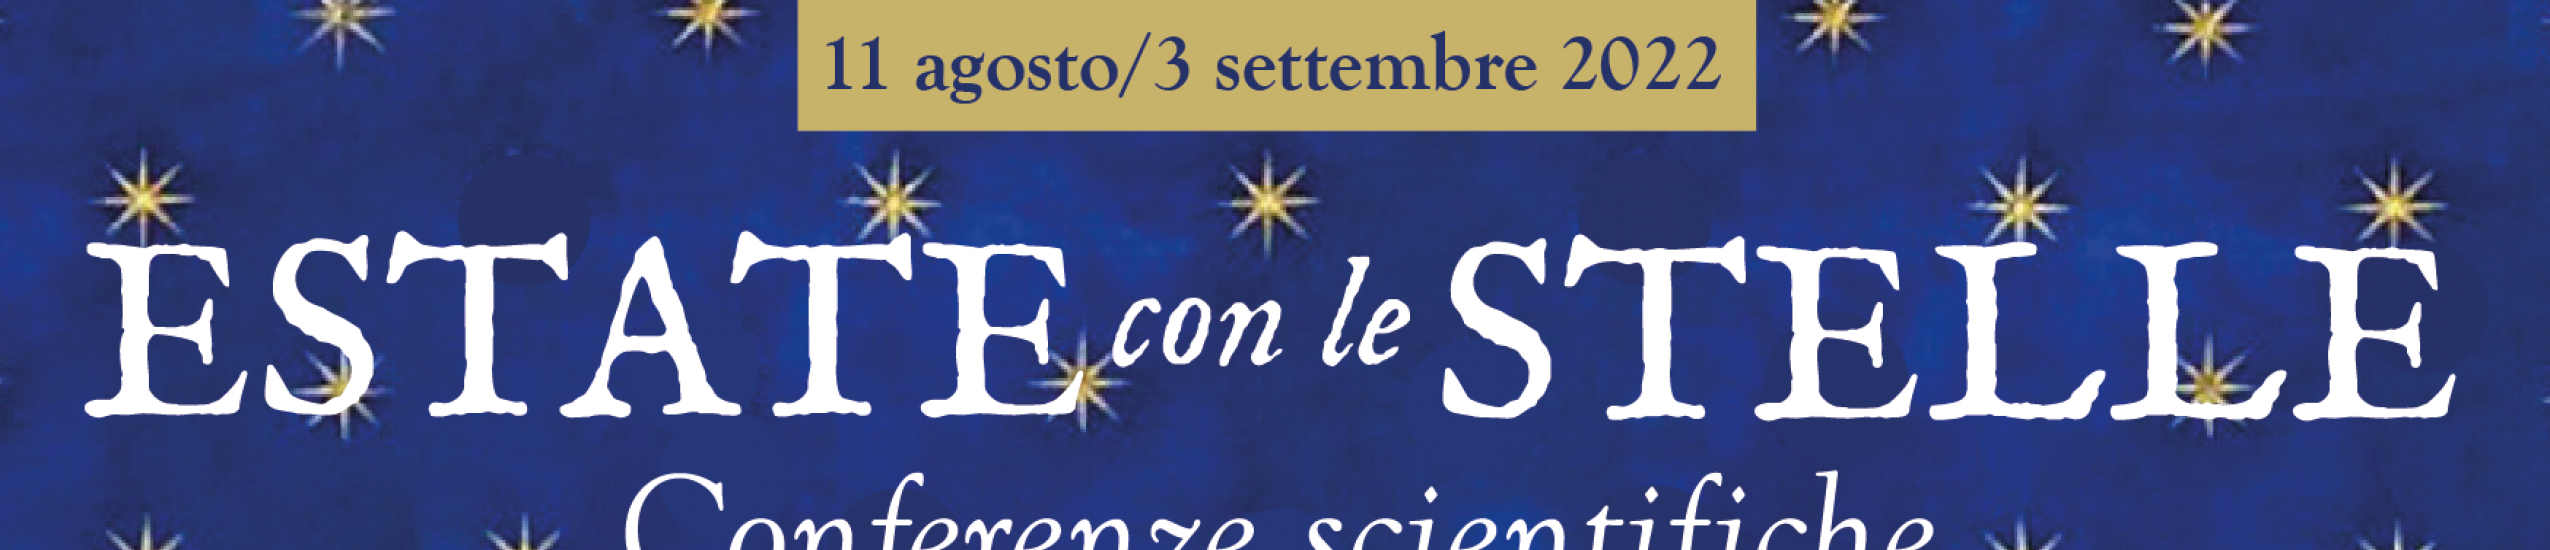 Santa Margherita Ligure, Rassegna culturale "Estate con le stelle", edizione 2022